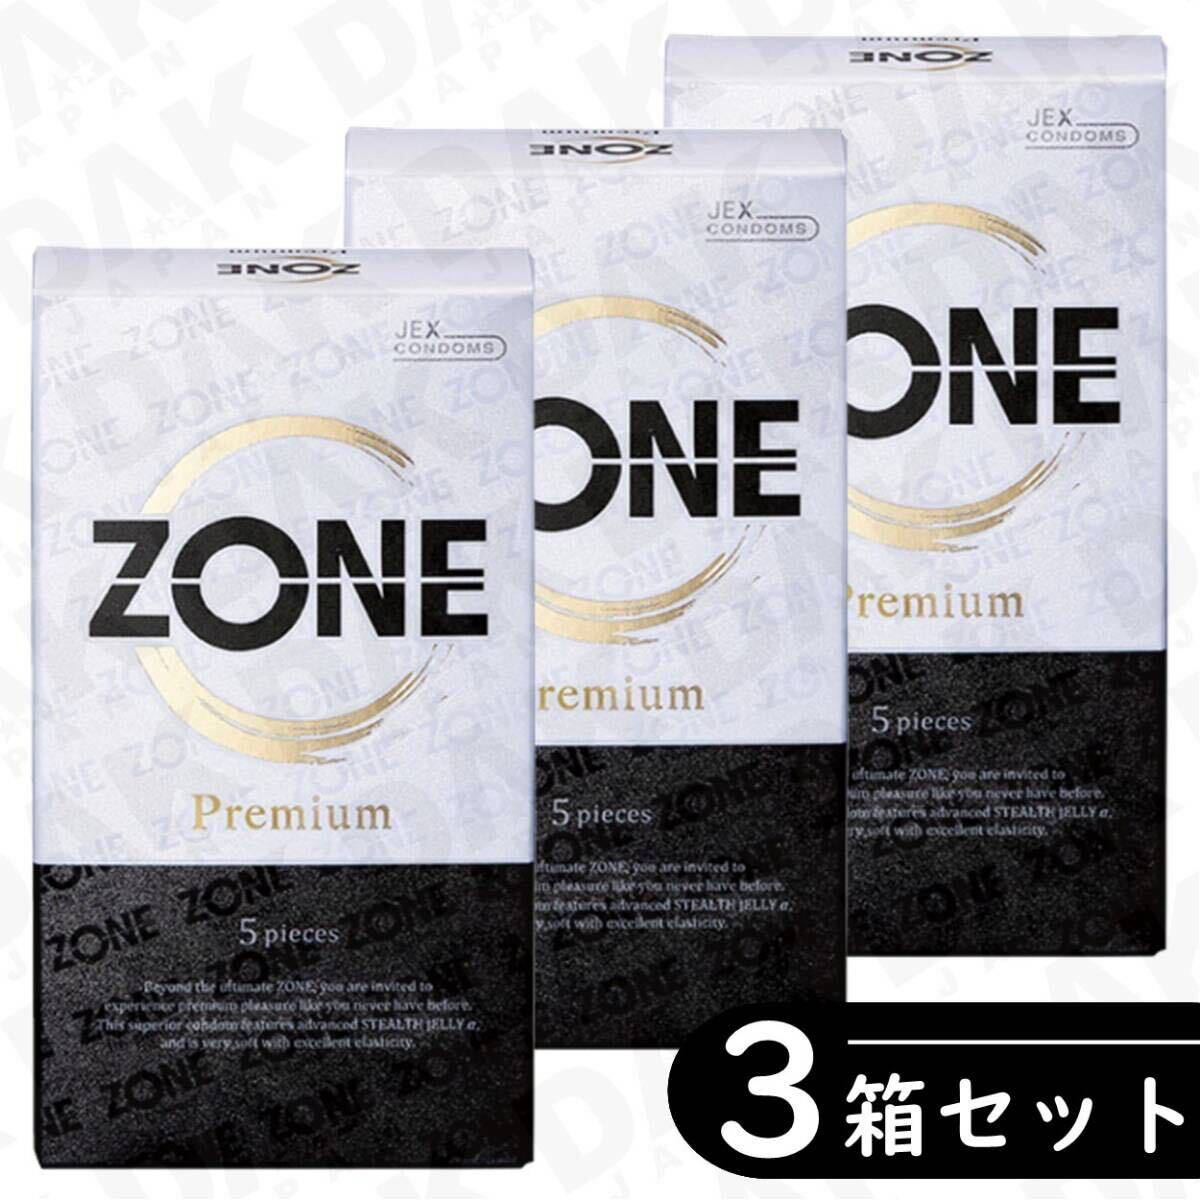 ZONE ゾーン プレミアム コンドーム 5個入り×3箱セット（避妊具 ゴム スキン）の画像1